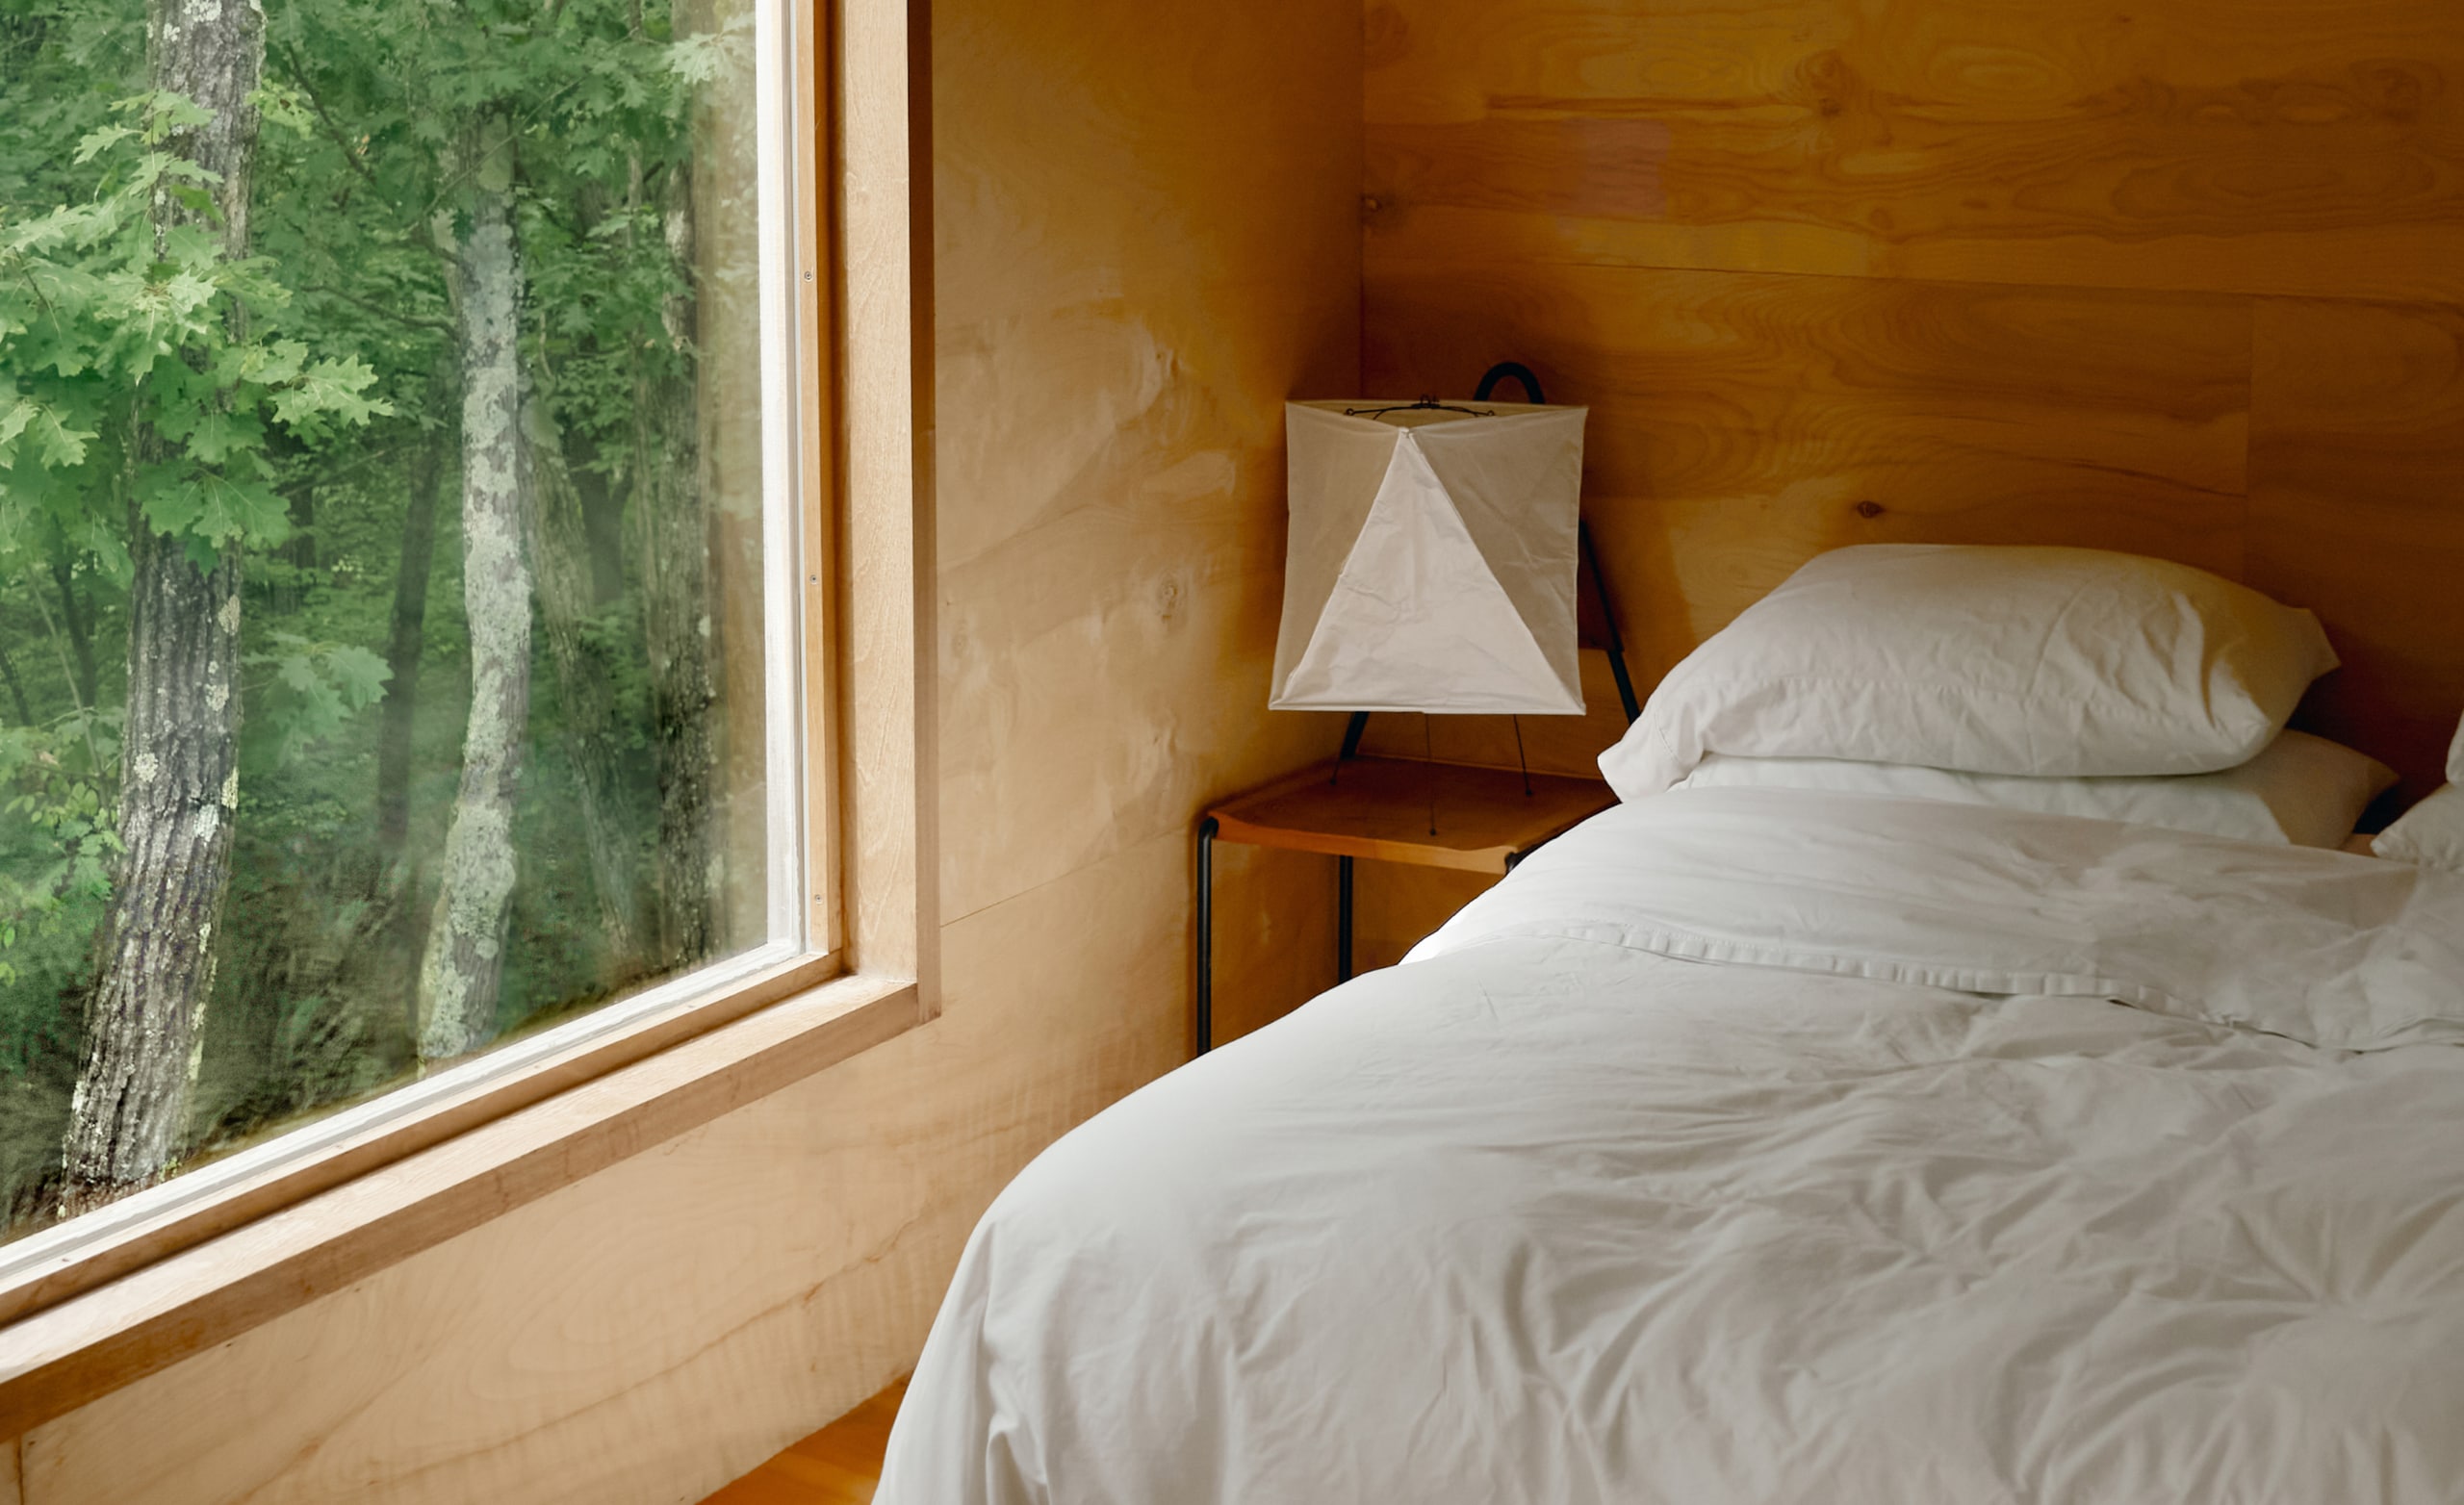 Egy hálószoba, a frissen vetett ágyon fehér ágynemű, és egy nagy ablak, amelyből a kinti fákat lehetett látni.